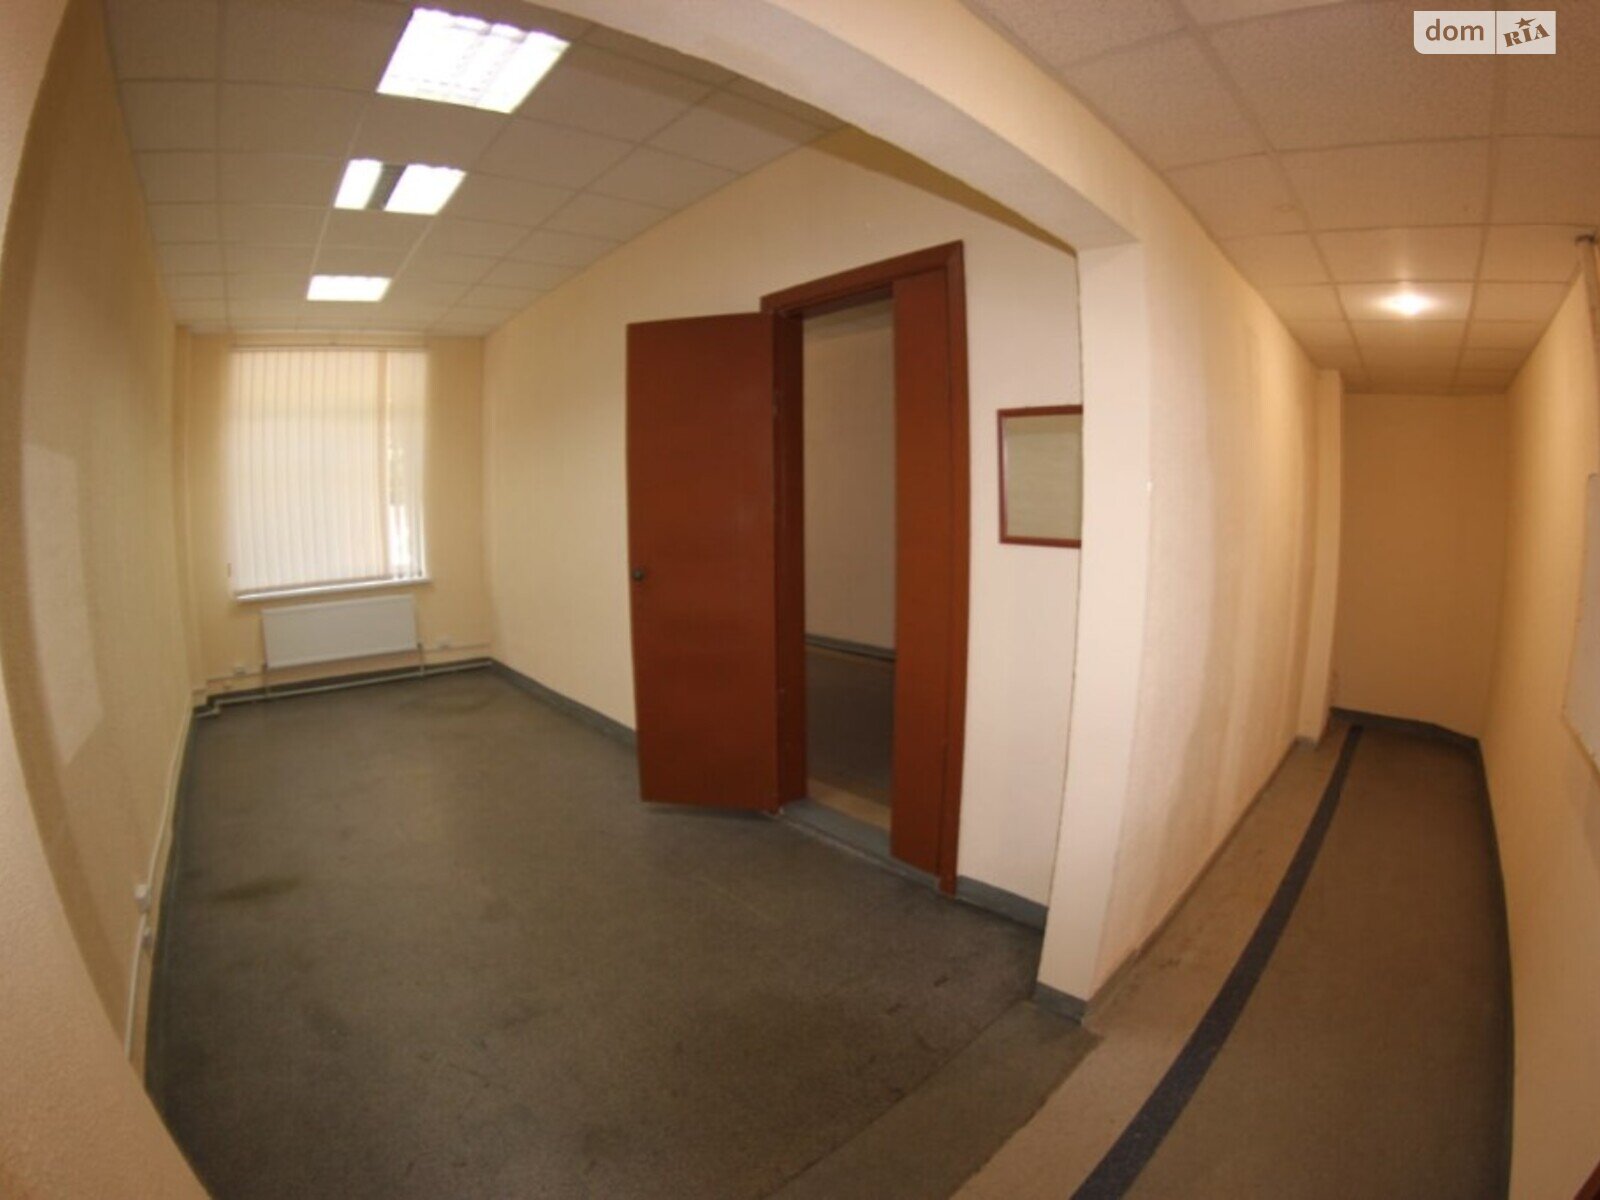 Оренда офісного приміщення в Дніпрі, Ольги княгині вулиця, приміщень - 2, поверх - 1 фото 1